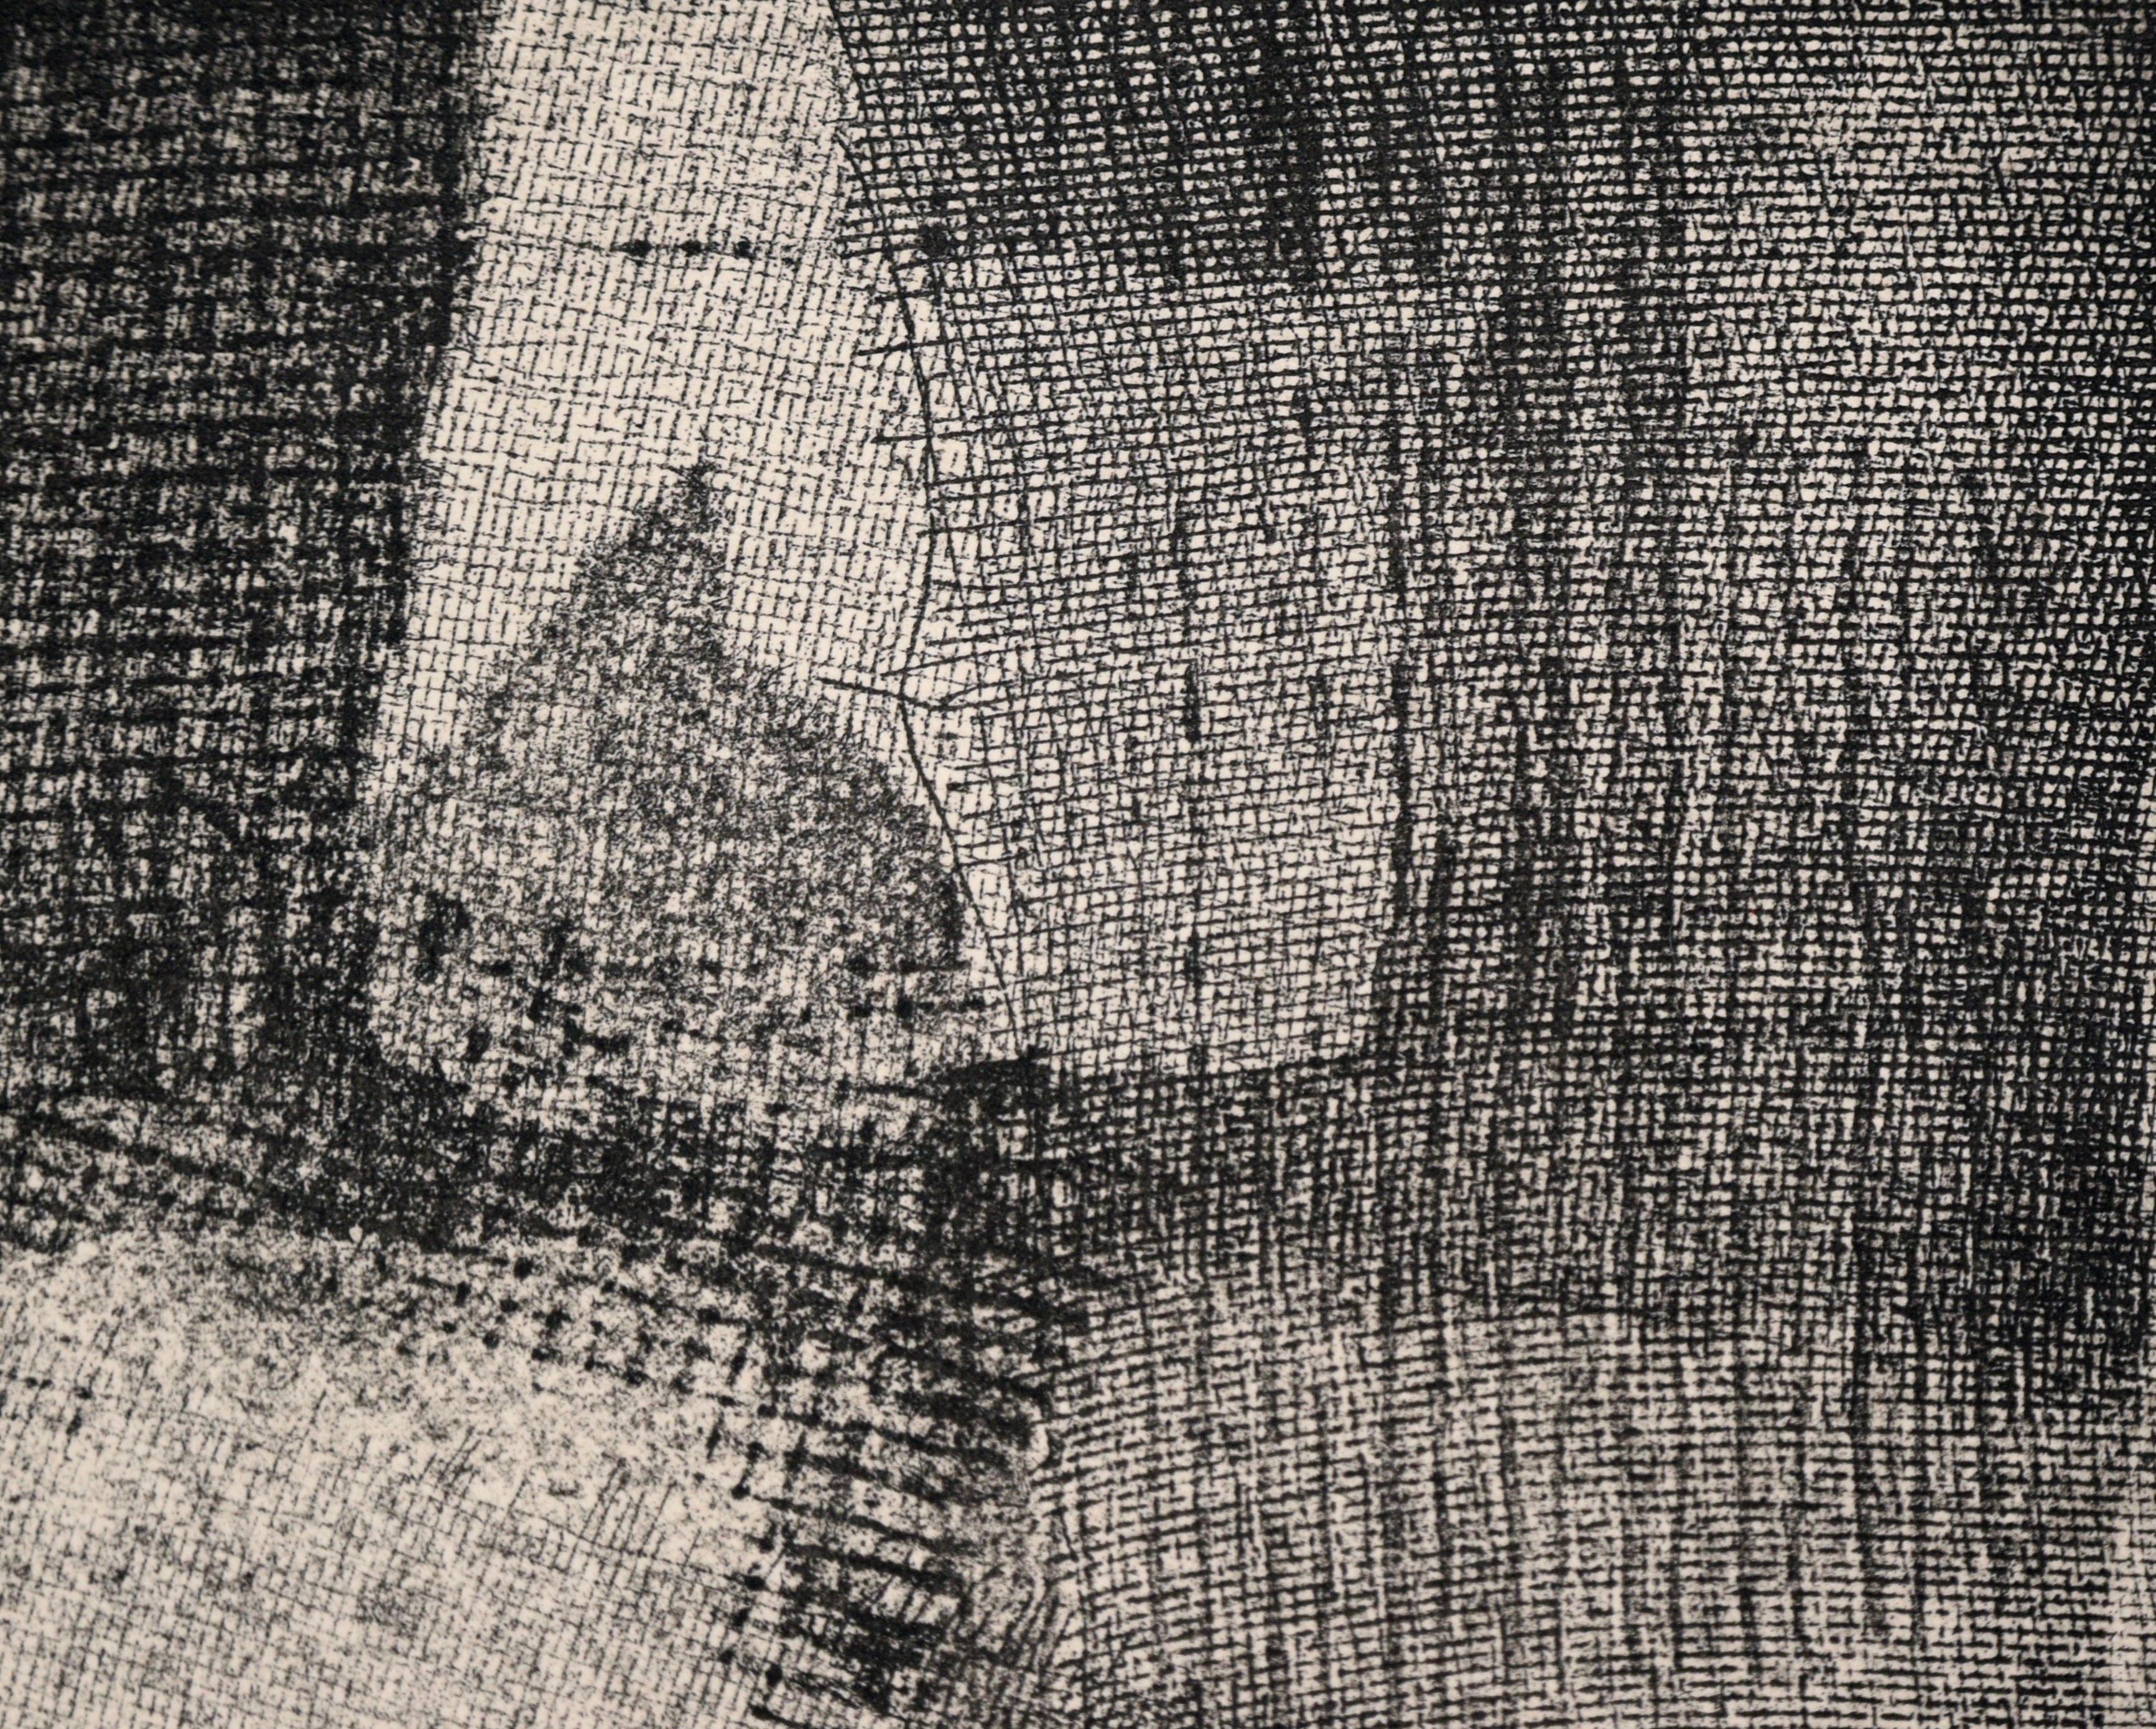 „Night Moves“ – Abstrakte Radierung in Tinte auf Papier (Künstlerprobe)
Abstrakter Textildruck von Doris Ann Warner (Amerikanerin, 1925-2010). Dieses Stück besteht aus sich überlappenden Stoffmustern, die an ein Käsetuch erinnern. Durch die